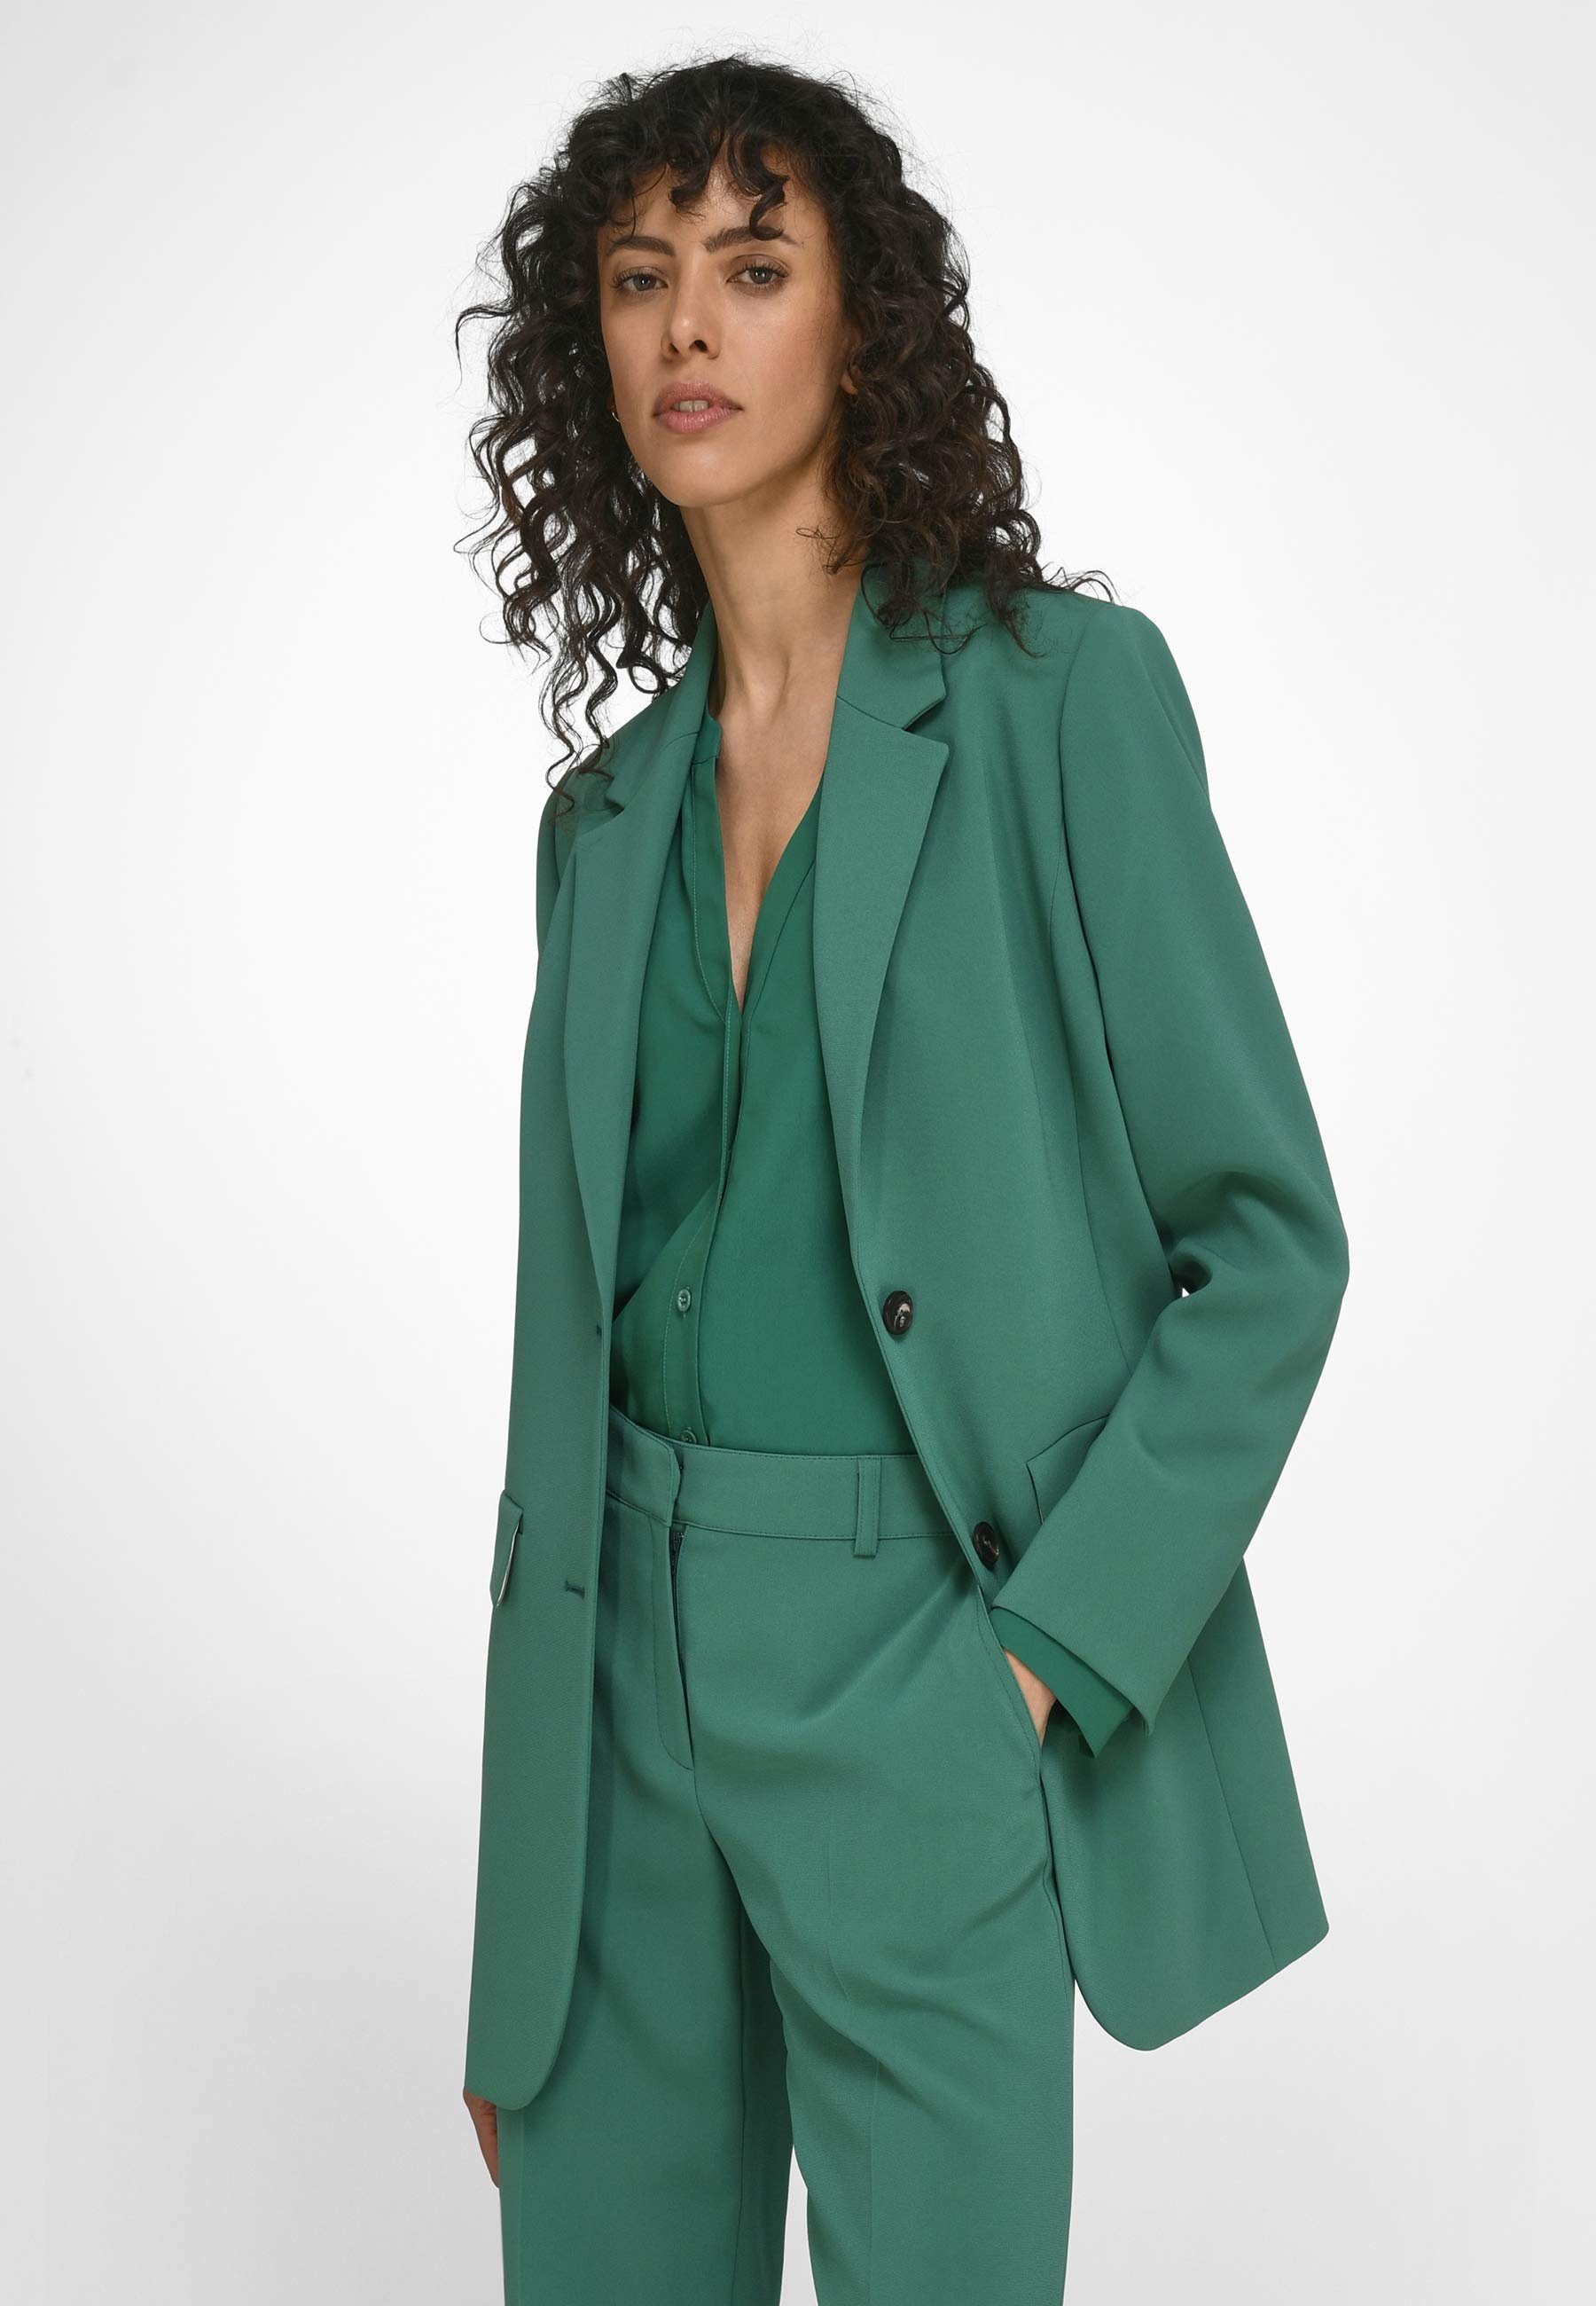 Grüne Damen Anzughosen online kaufen | OTTO